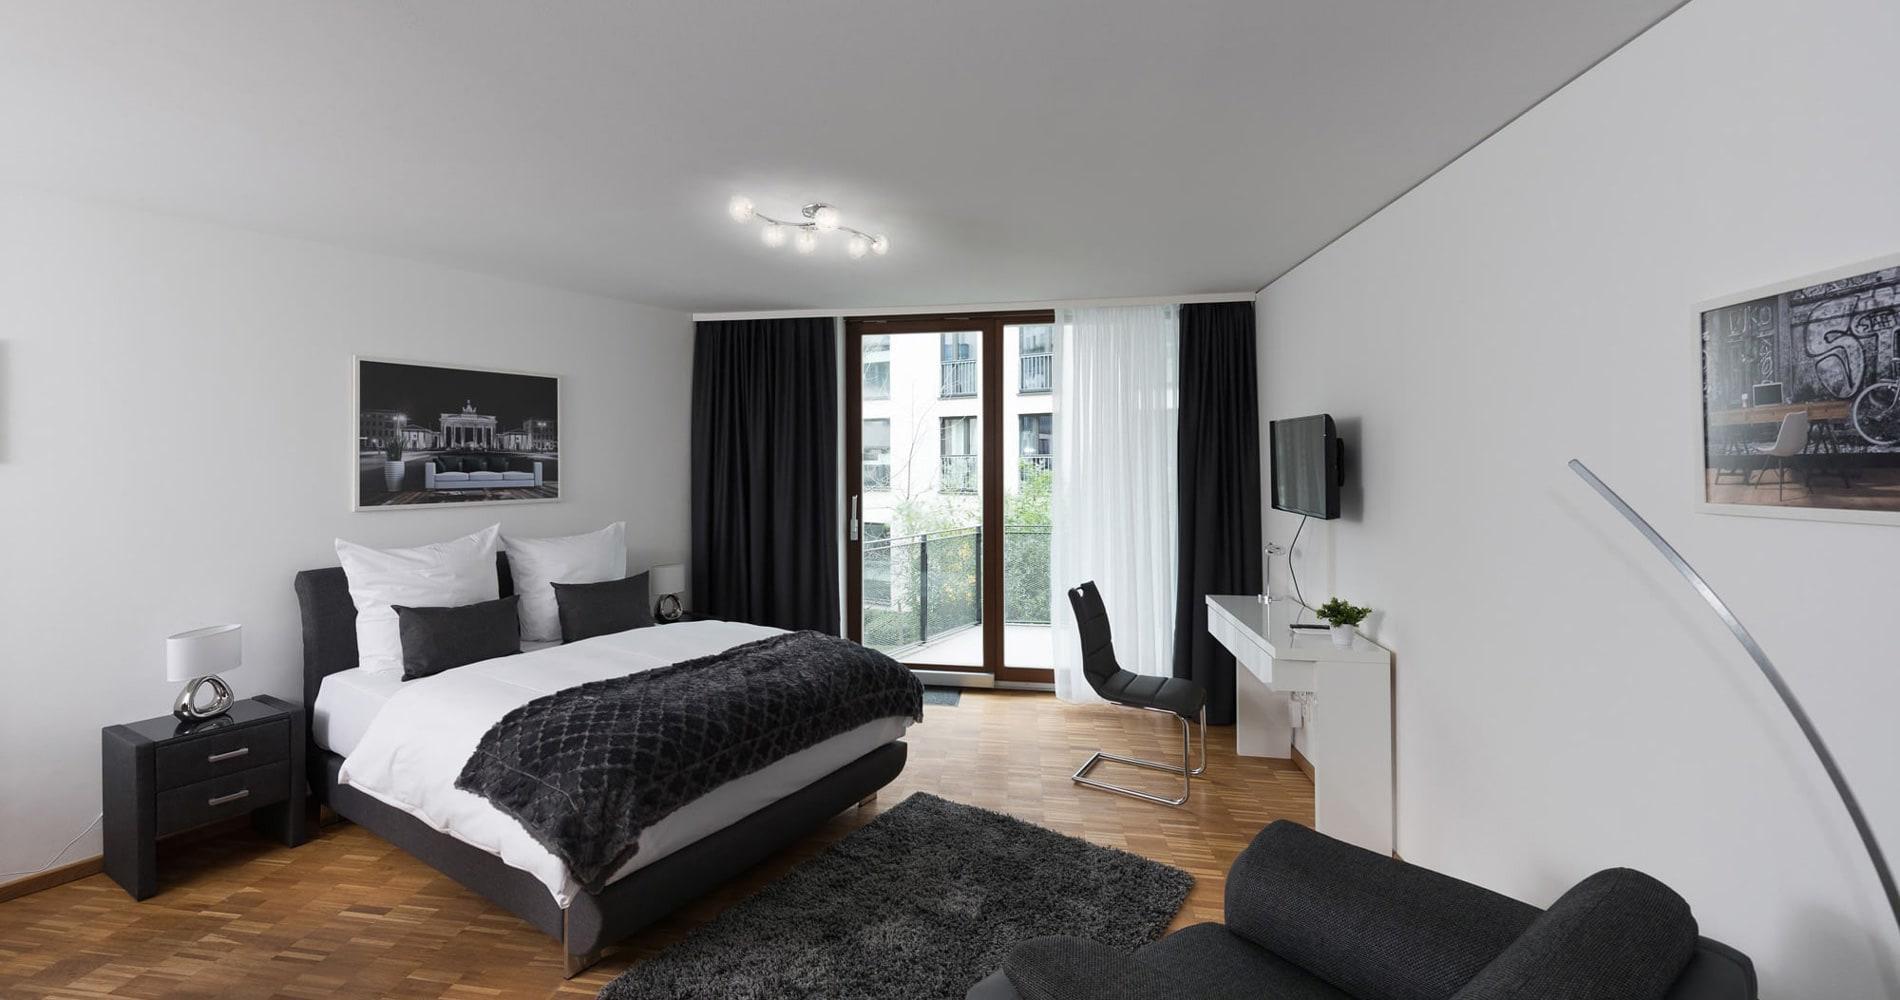 Serviced Apartment in Köln oder Berlin gesucht ? Rufen Sie uns an: +49-171-7605331